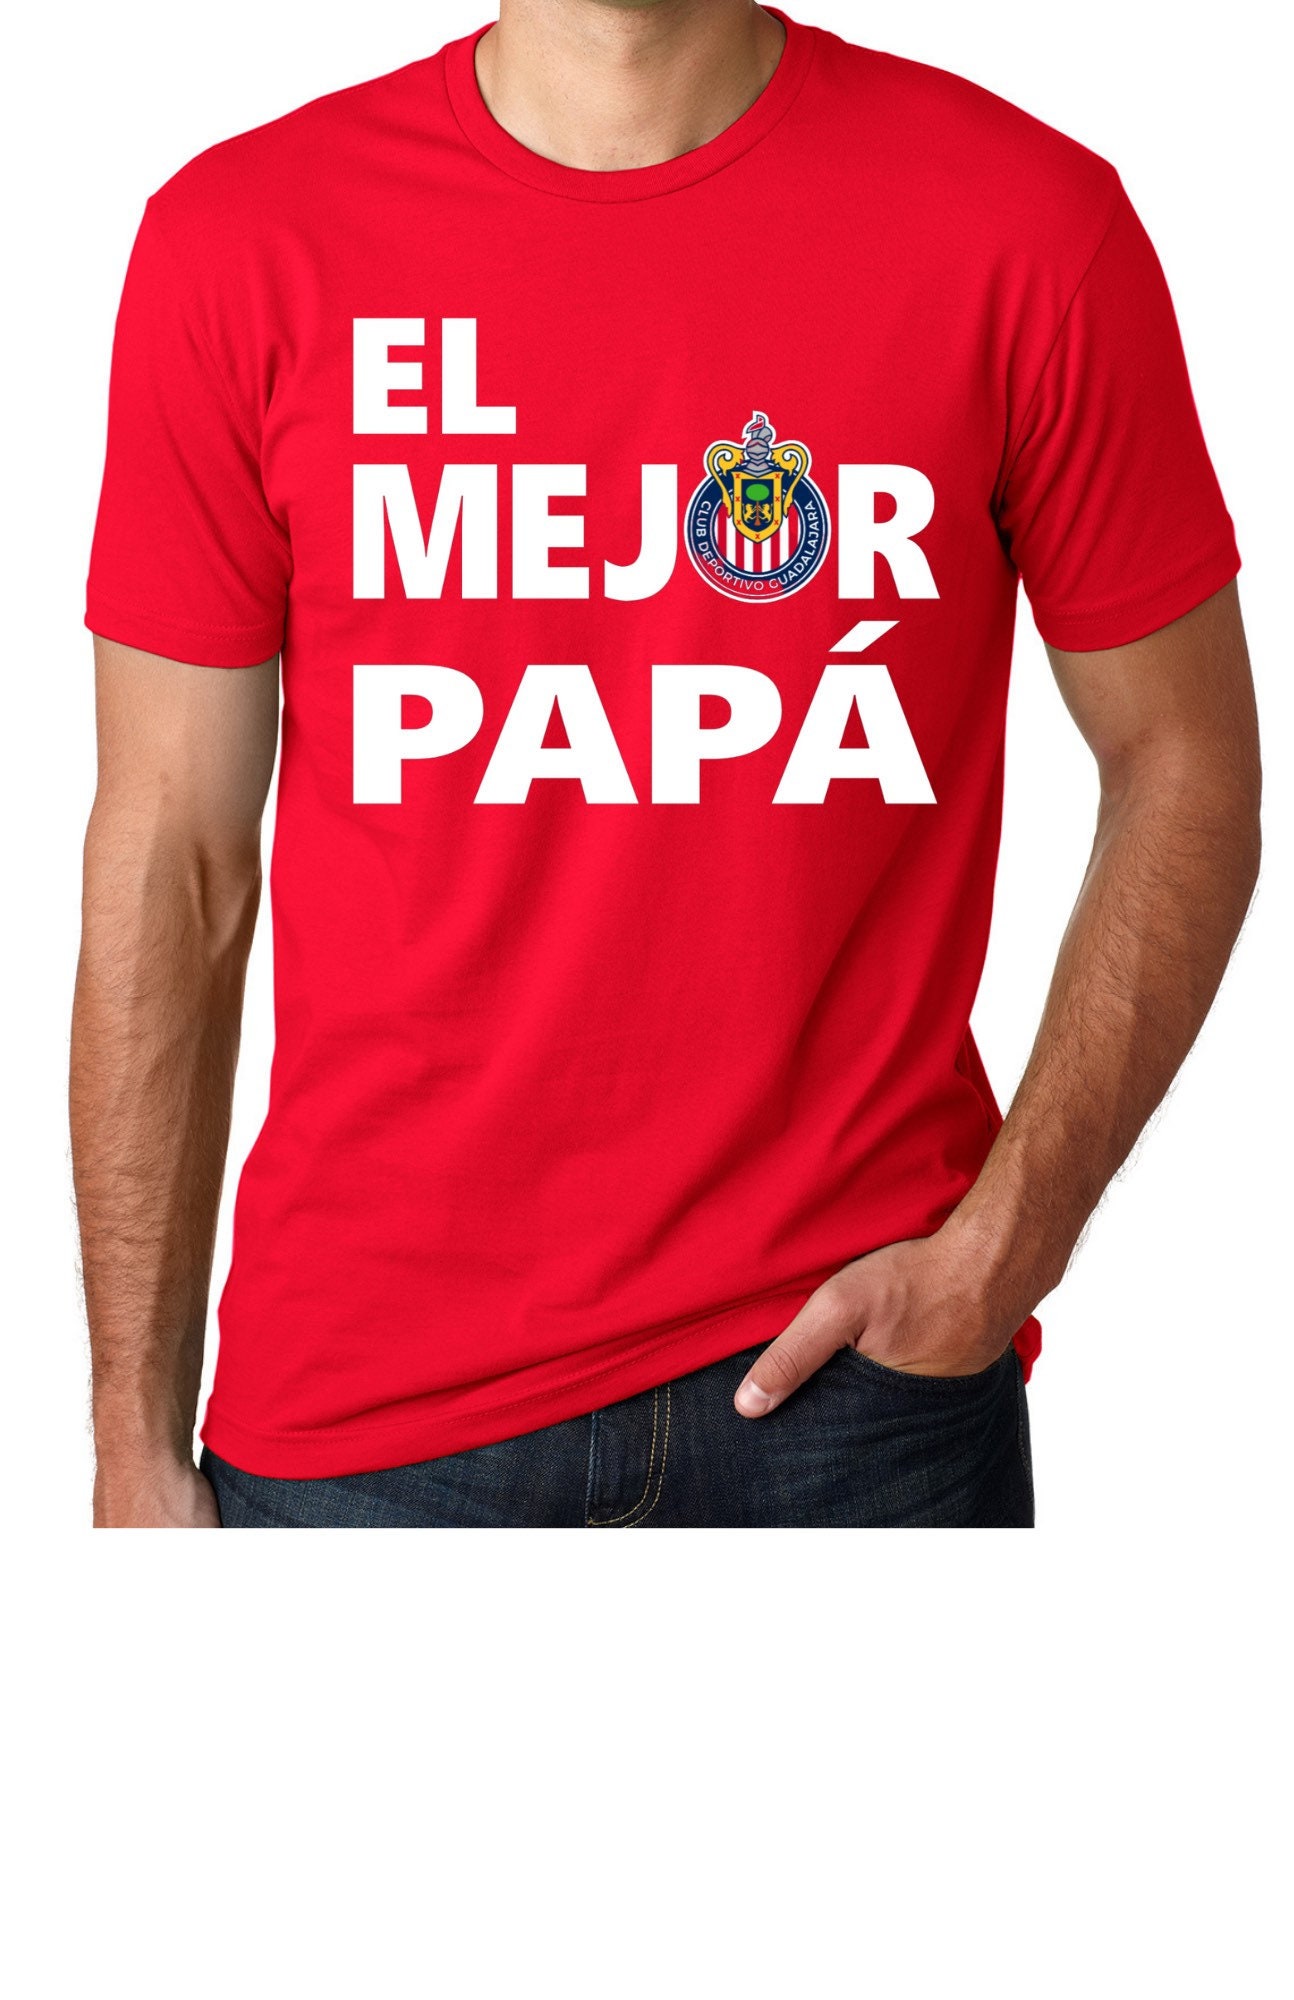 El mejor papá t-shirt / chivas del Guadalajara/ regalo para | Etsy